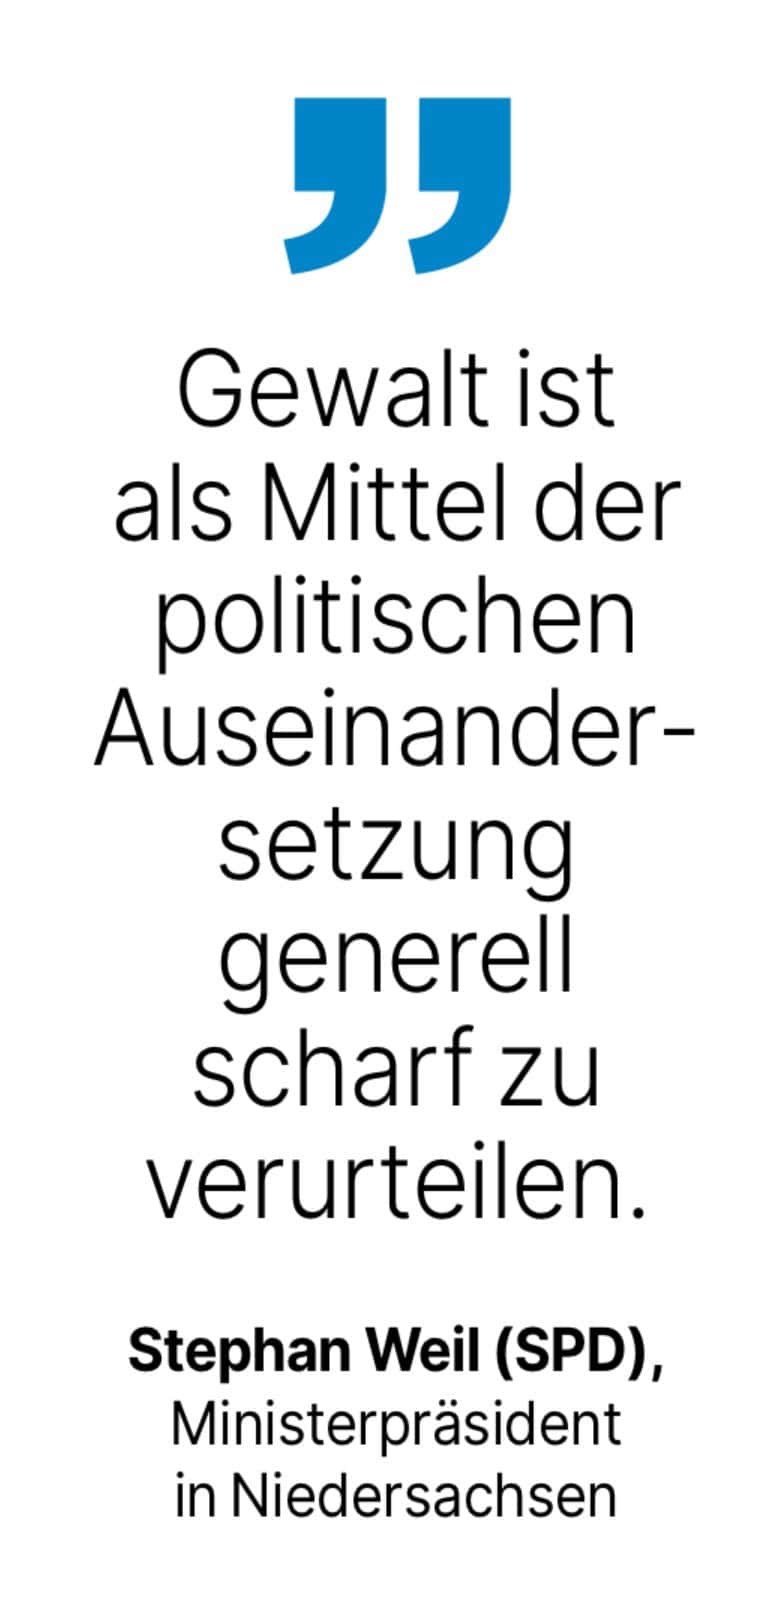 Stephan Weil (SPD), Ministerpräsident in Niedersachsen: Gewalt ist als Mittel der politischen Auseinandersetzung generell scharf zu verurteilen.